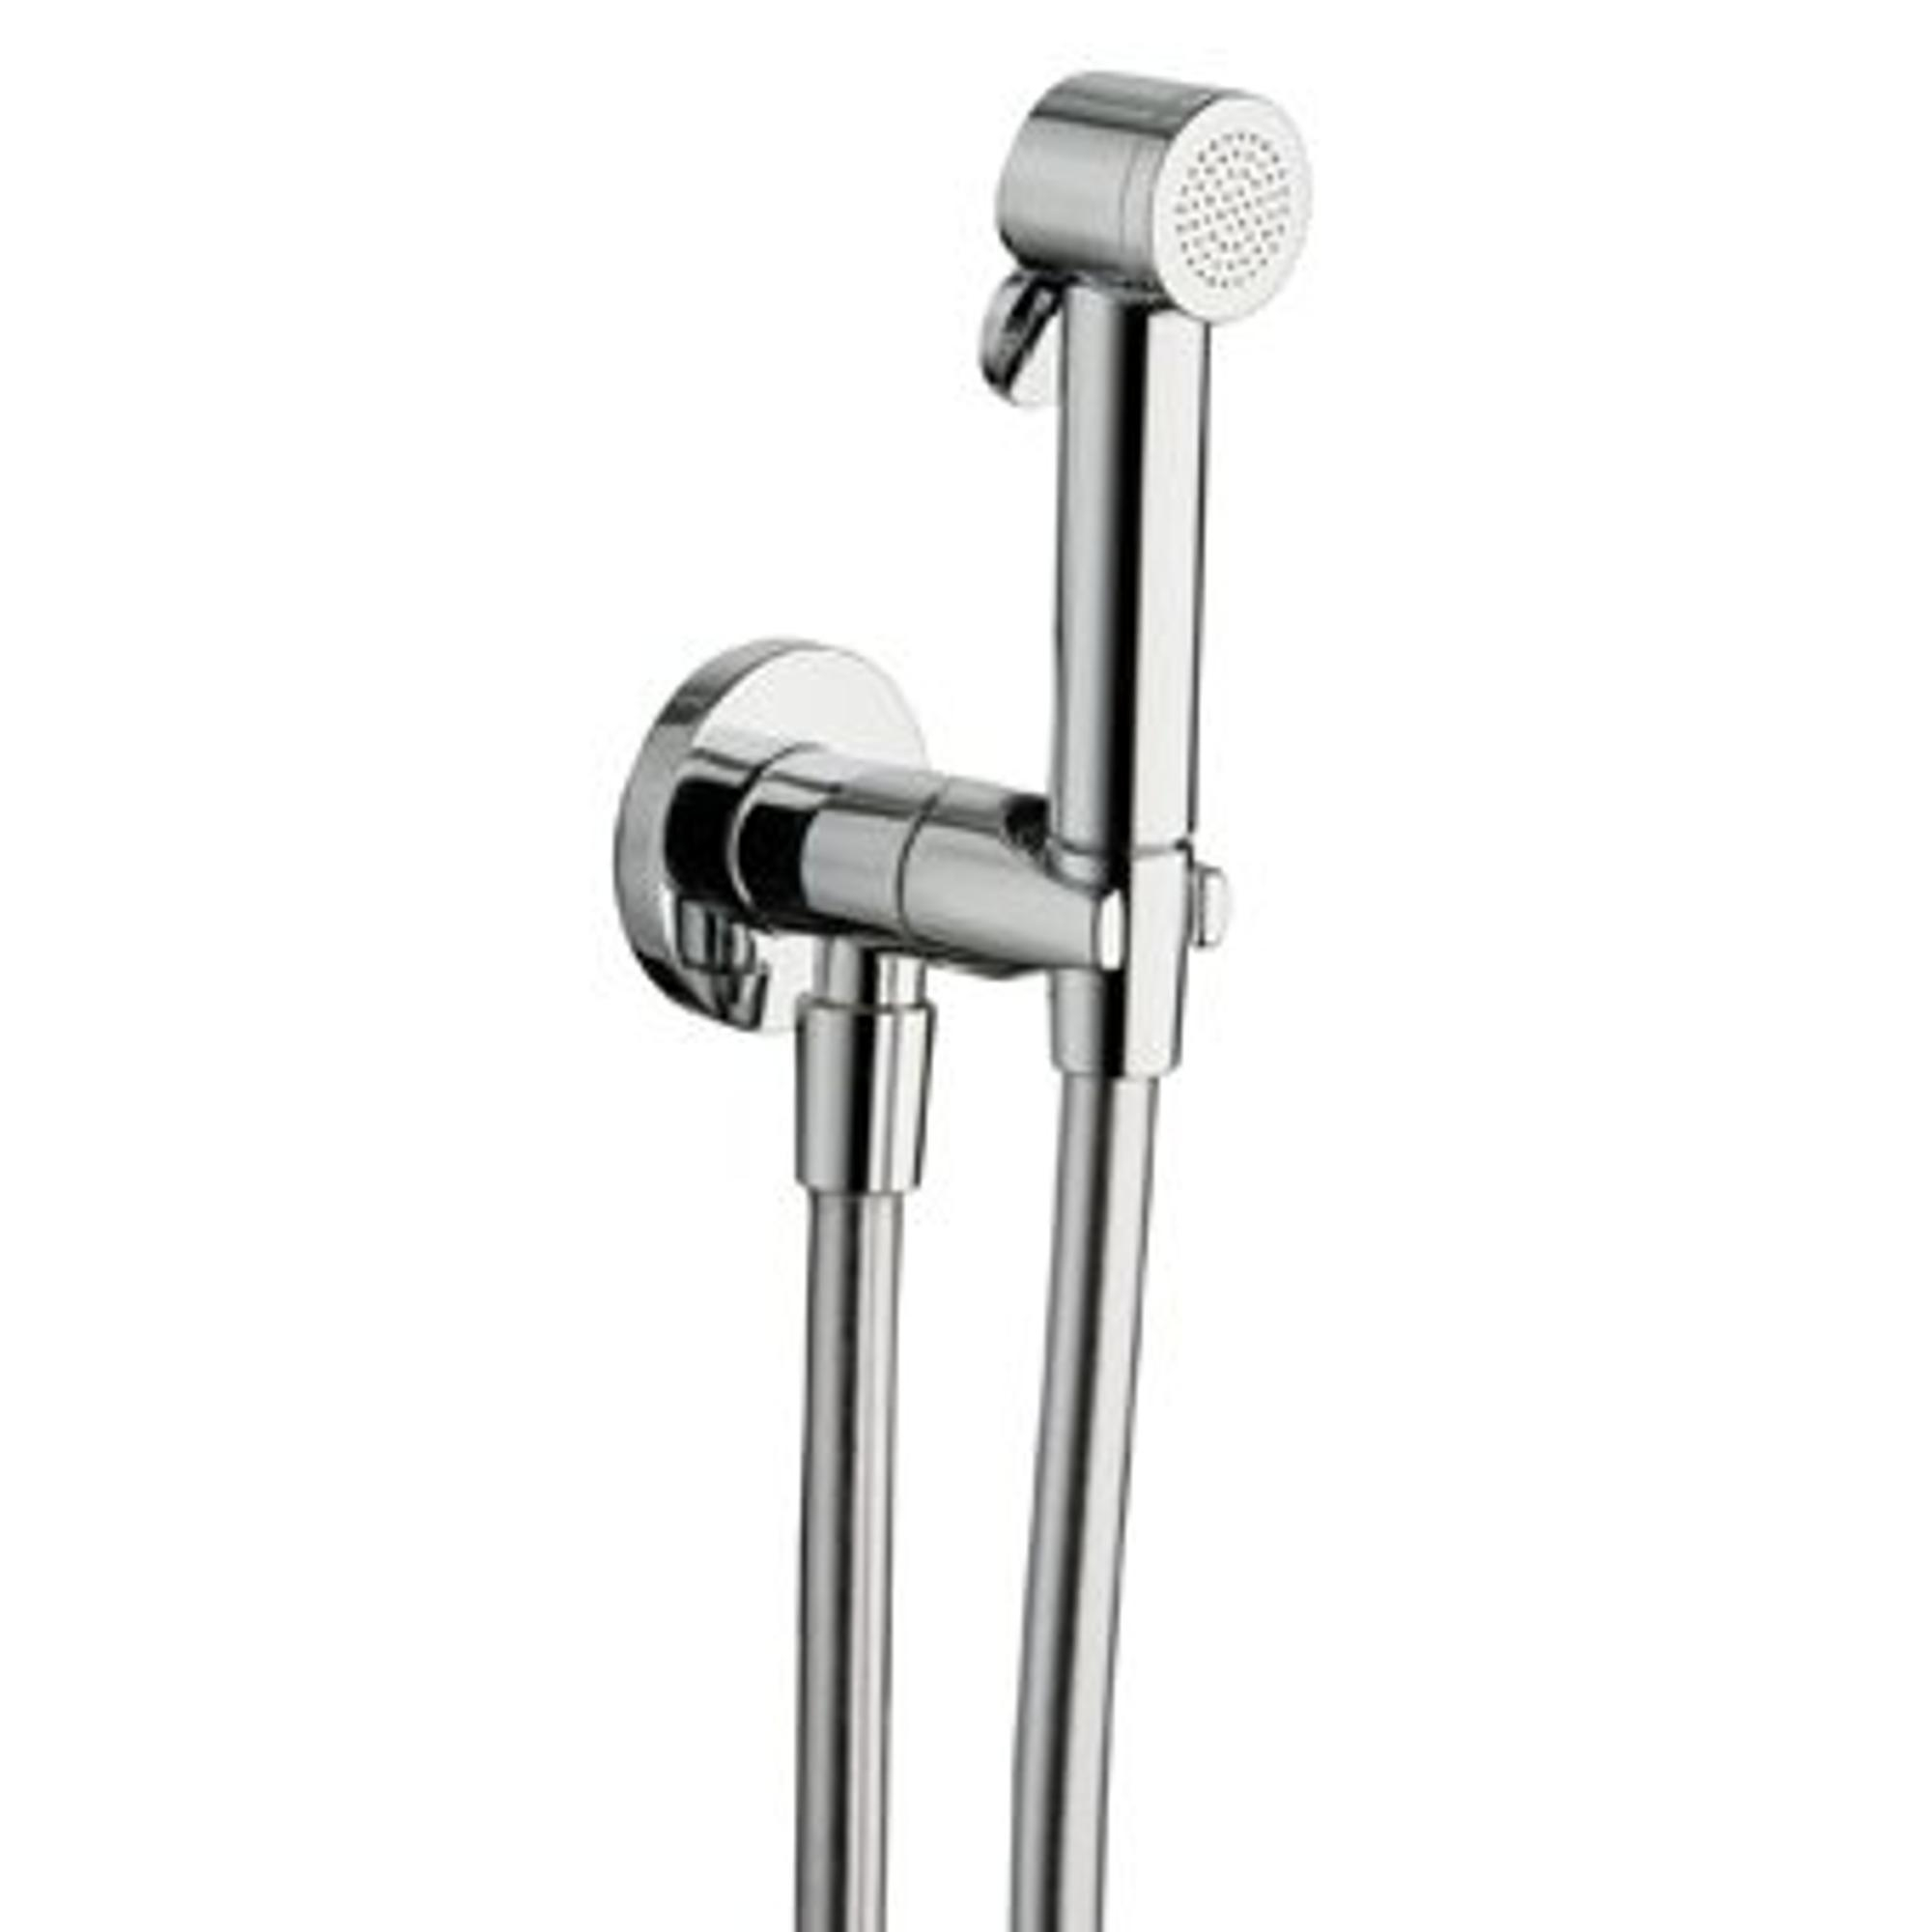 Raminex Tuka tuka ensemble WC/douche avec douchette à main avec  interrupteur marche/arrêt 1/2 avec flexible de douche 100cm + support mural  avec robinet intégré chrome - AC67551 